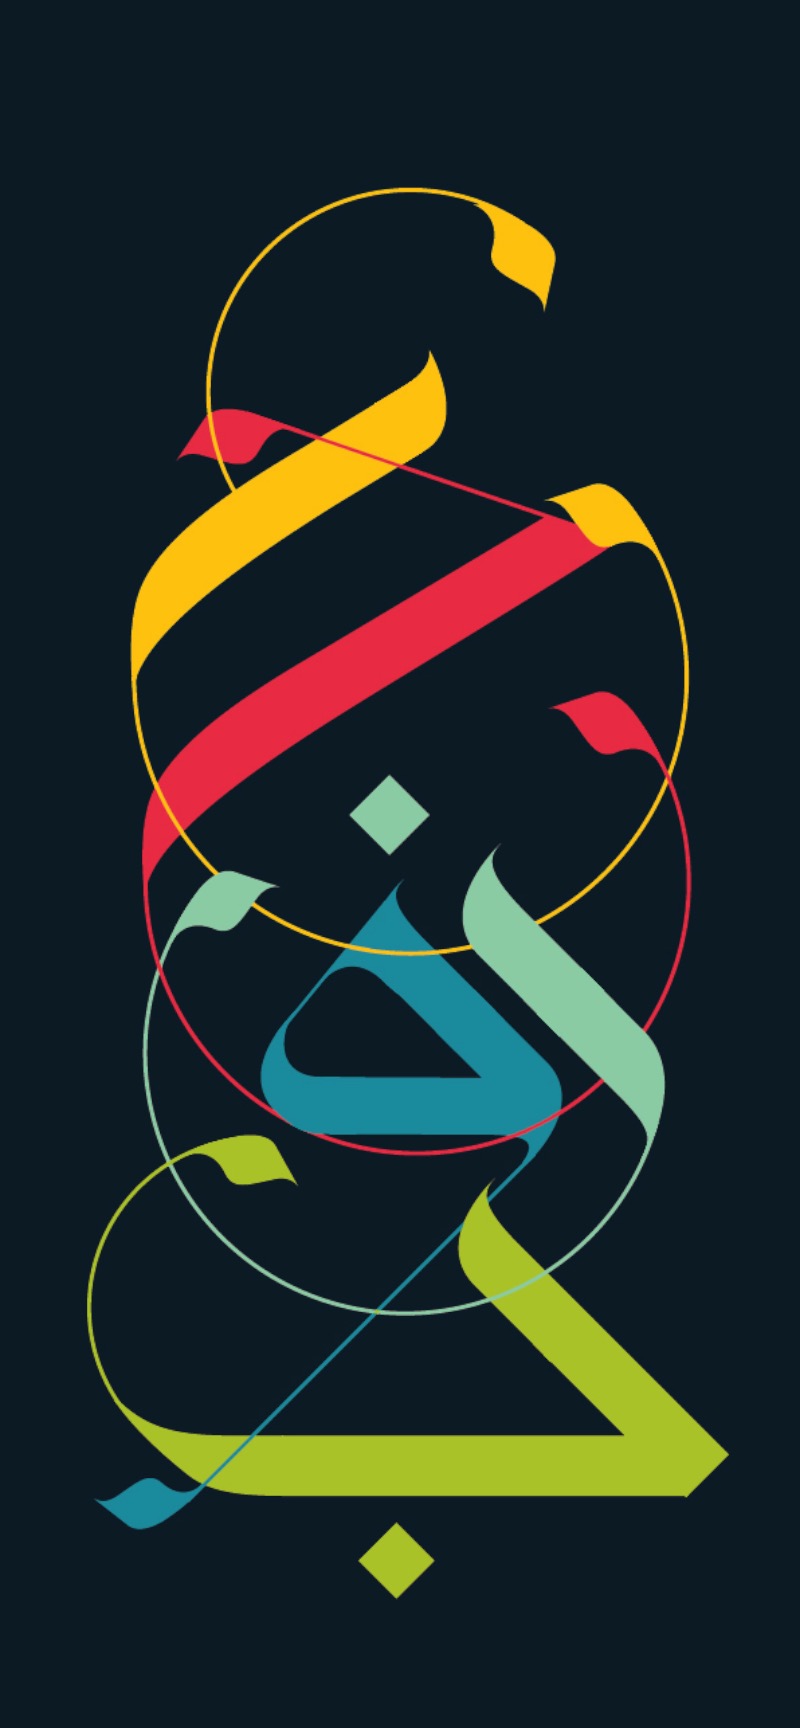 Ruh Al-Alam é um artista e designer britânico, especializado em caligrafia árabe, tipografia e branding. Ele, que formou na Central St. Martins College of Art & Design, acabou abrindo seu próprio estúdio depois de terminar seu aprendizado sobre caligrafia árabe no Egito.